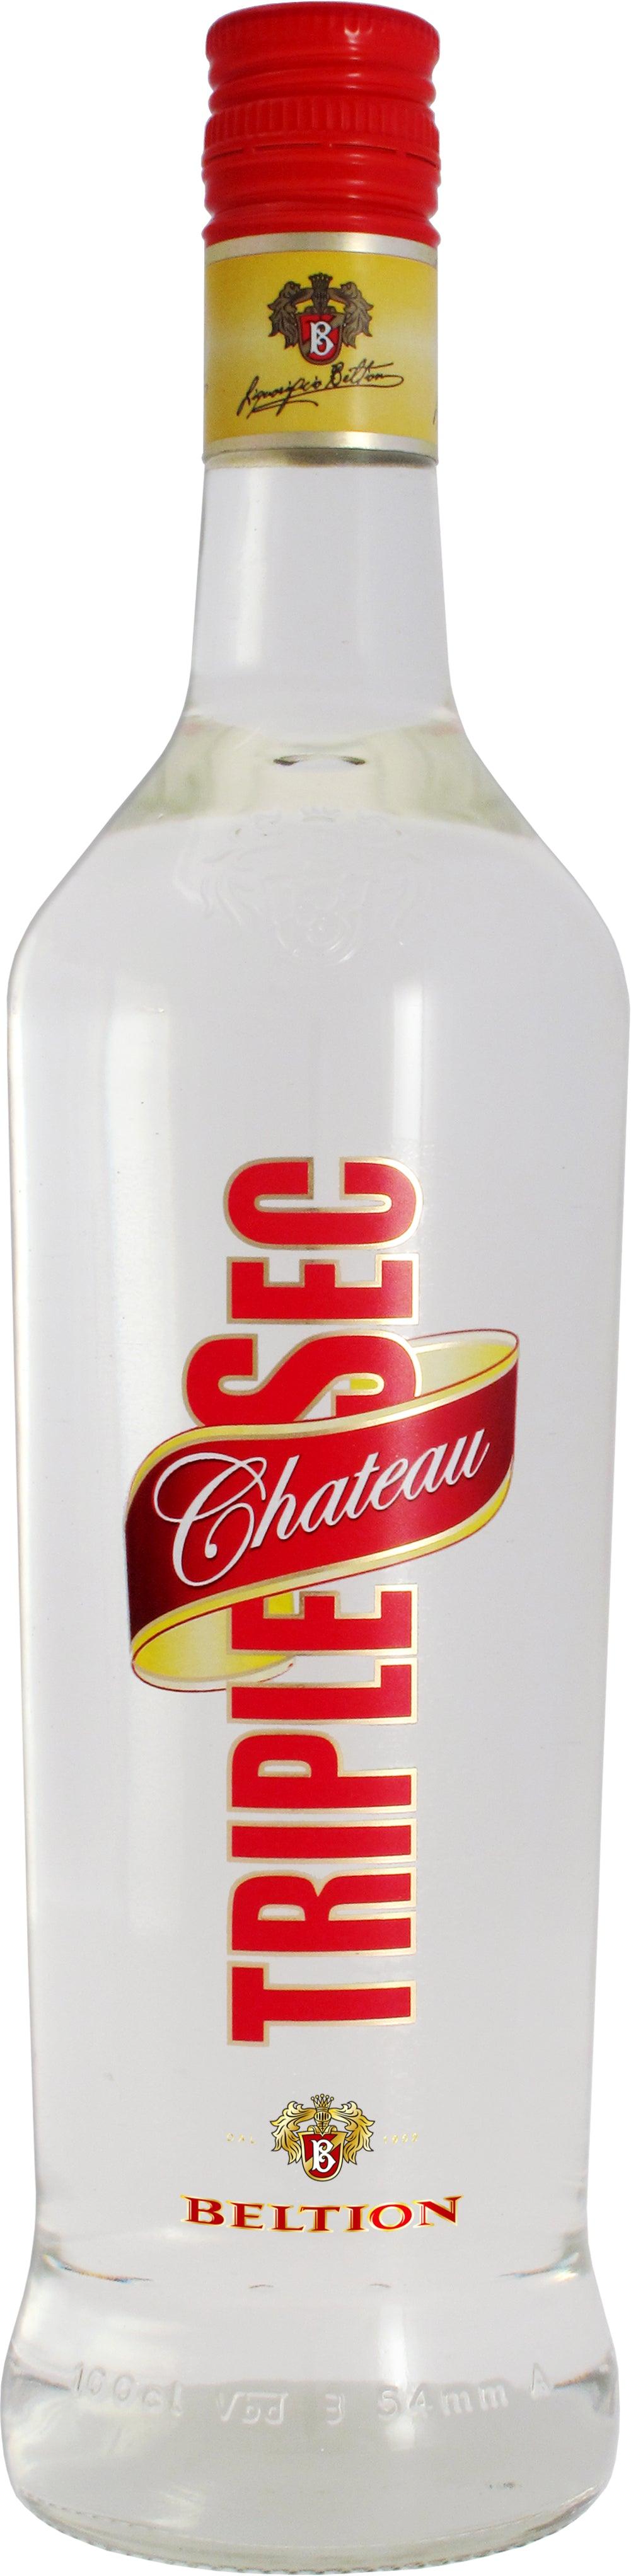 BELTION - TRIPLE SEC CHATEAU 40° ML1000 - 3 Bottiglie - I migliori prodotti Made in Italy da Fiera di Monza Shop - Solo 40.50€! Acquista subito su Fiera di Monza Shop!